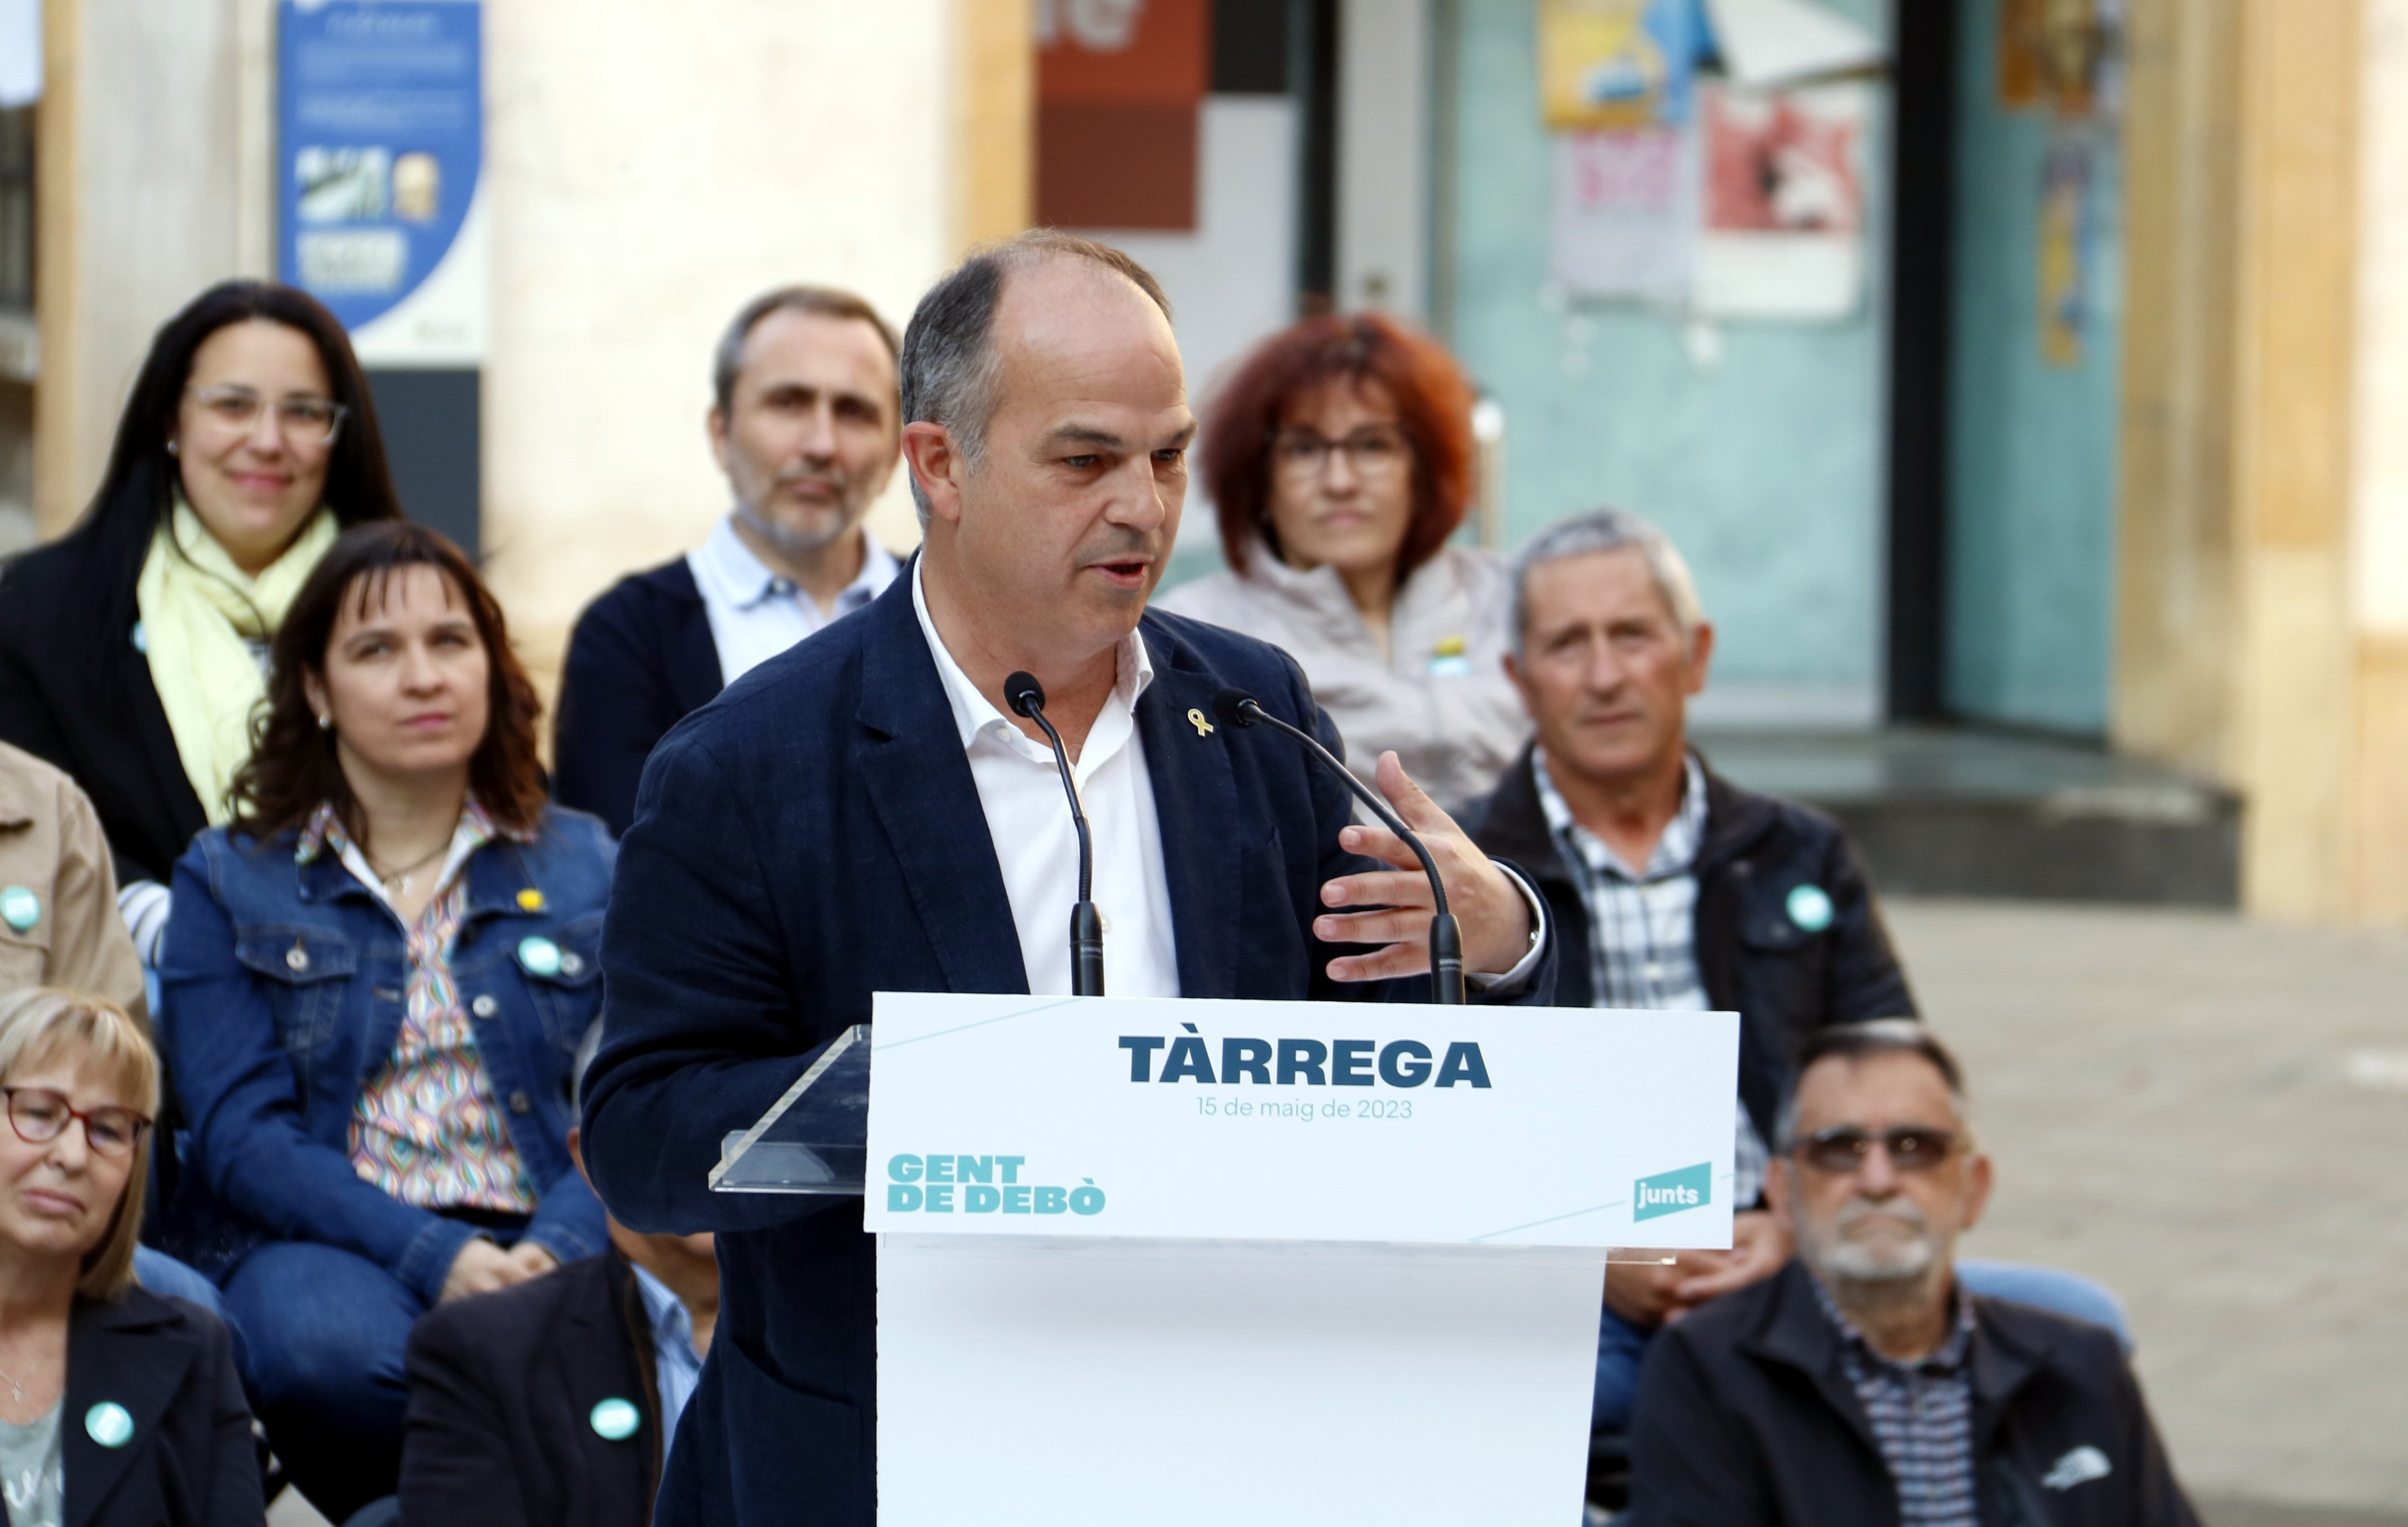 Jordi Turull dispara contra los tripartitos en los municipios: "Lío, incompetencia y sectarismo"